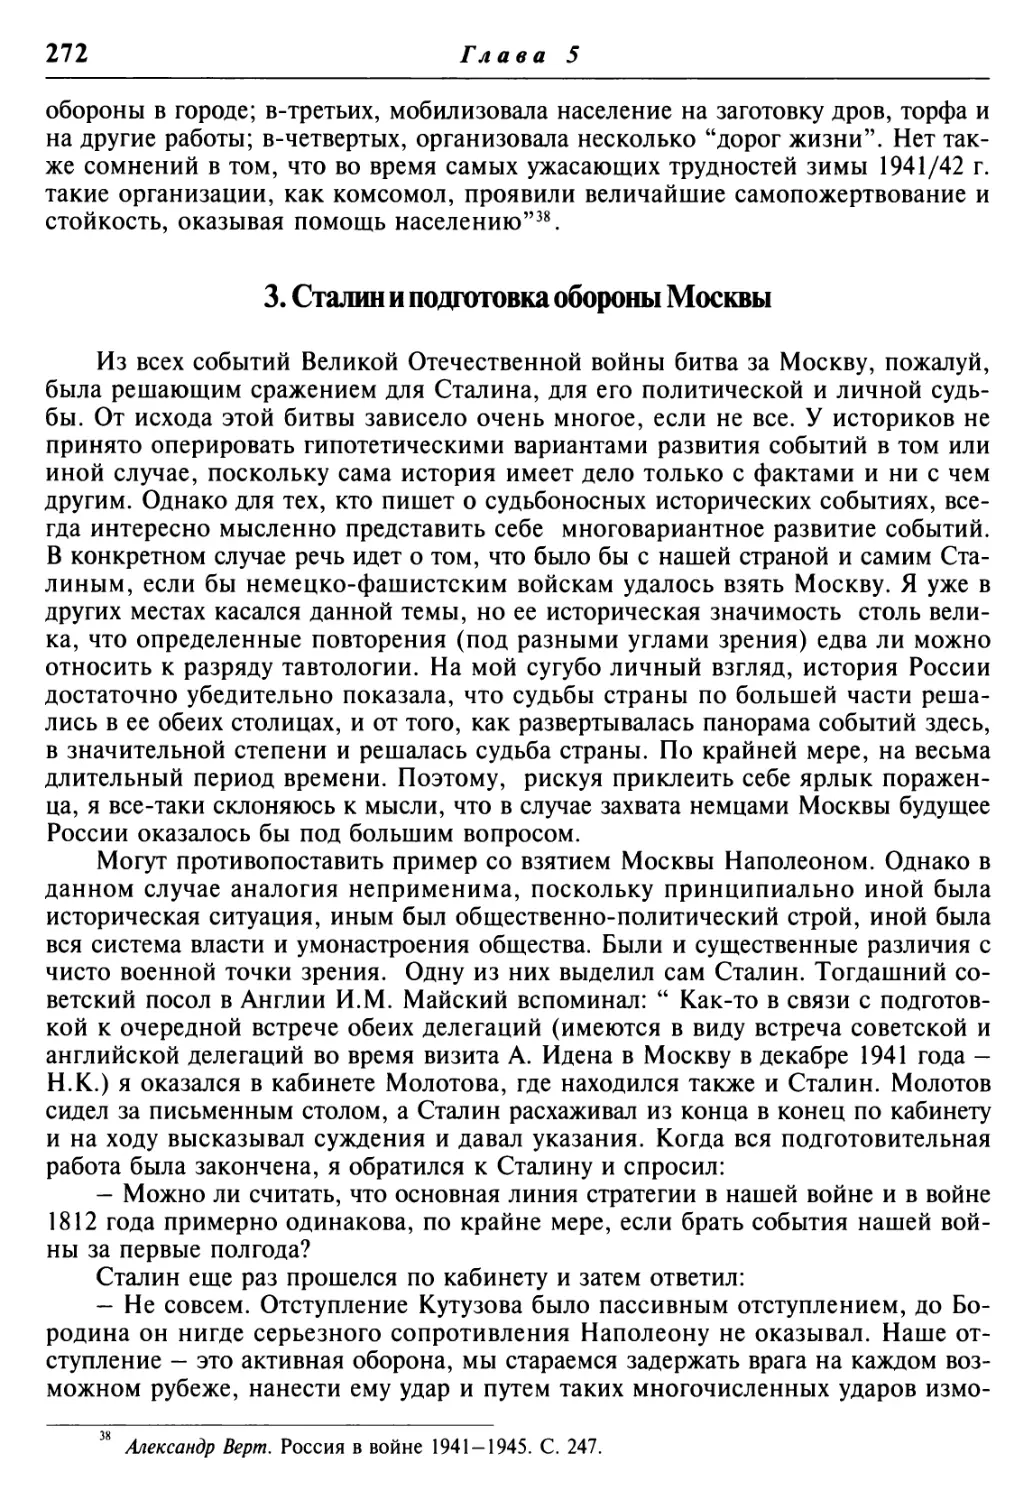 3. Сталин и подготовка обороны Москвы